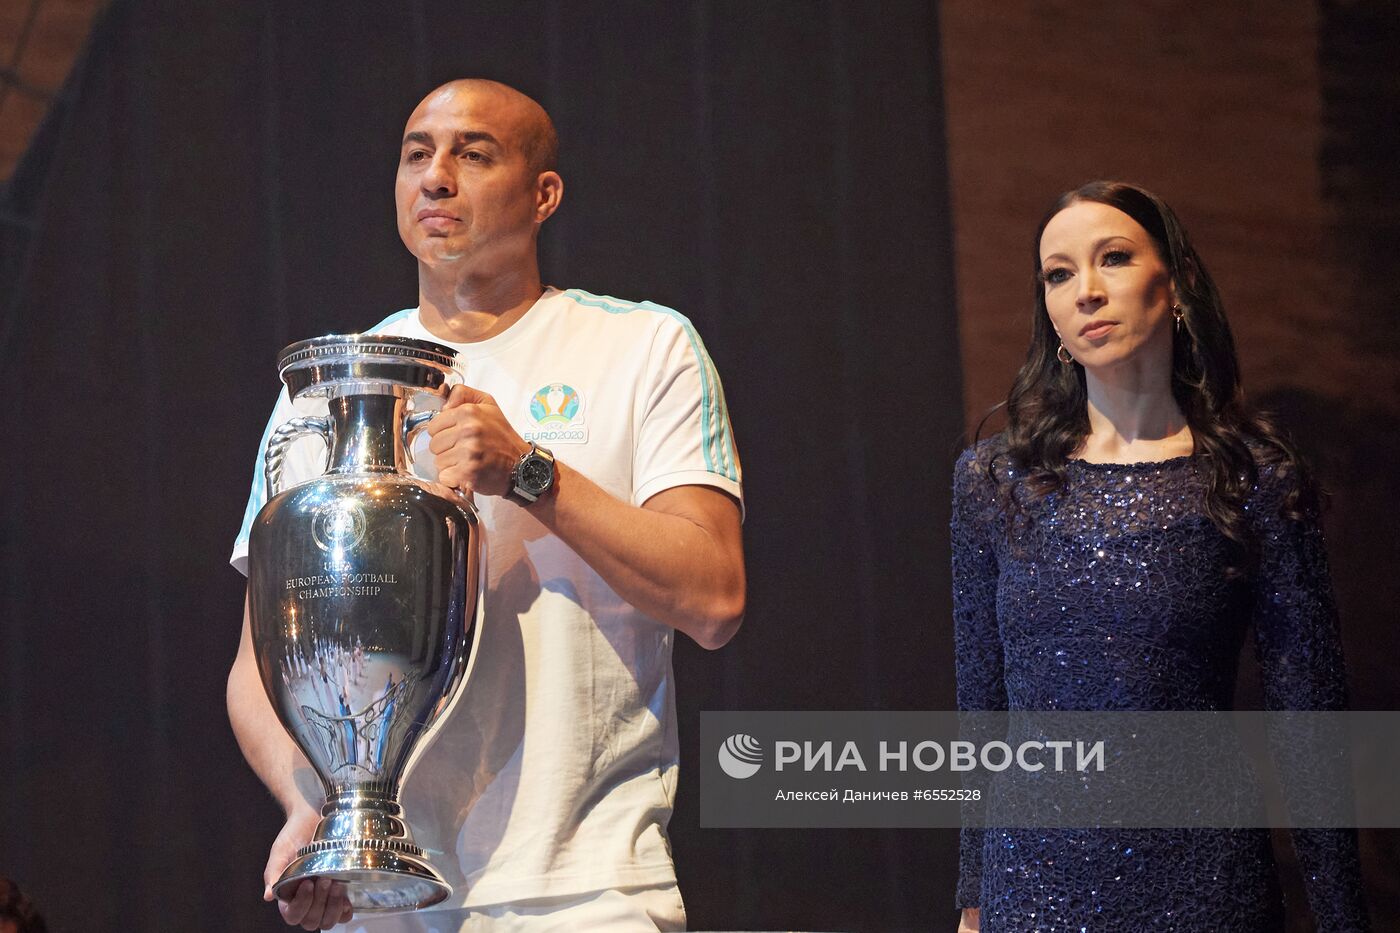 Кубок Европы по футболу представлен в Санкт-Петербурге